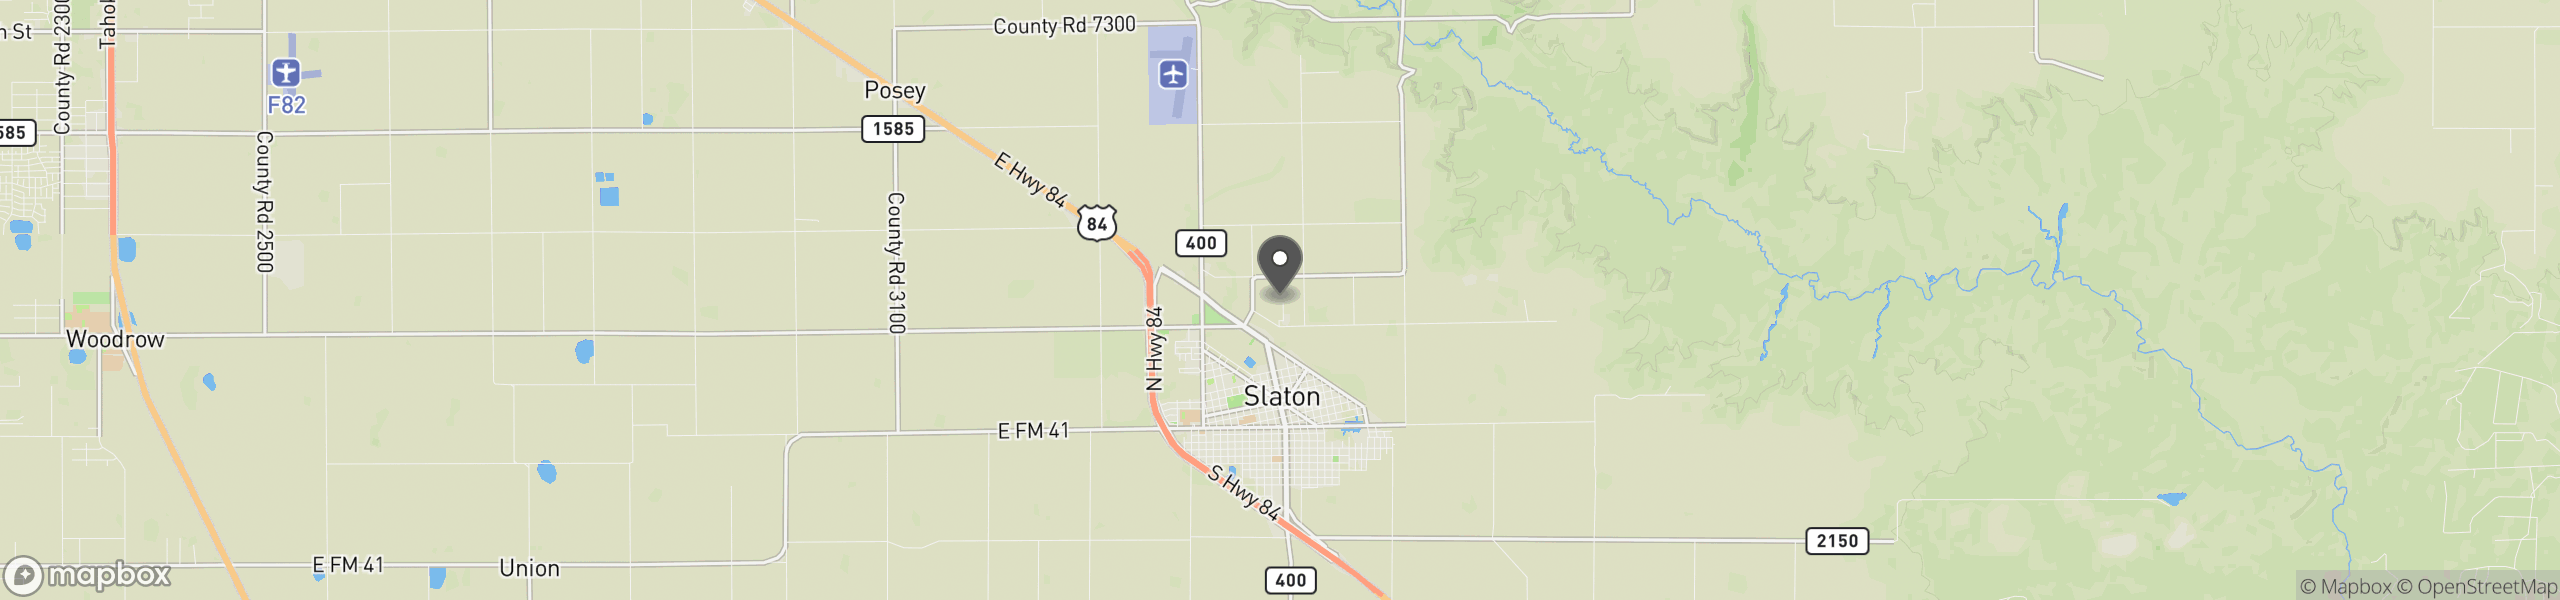 Slaton, TX 79364